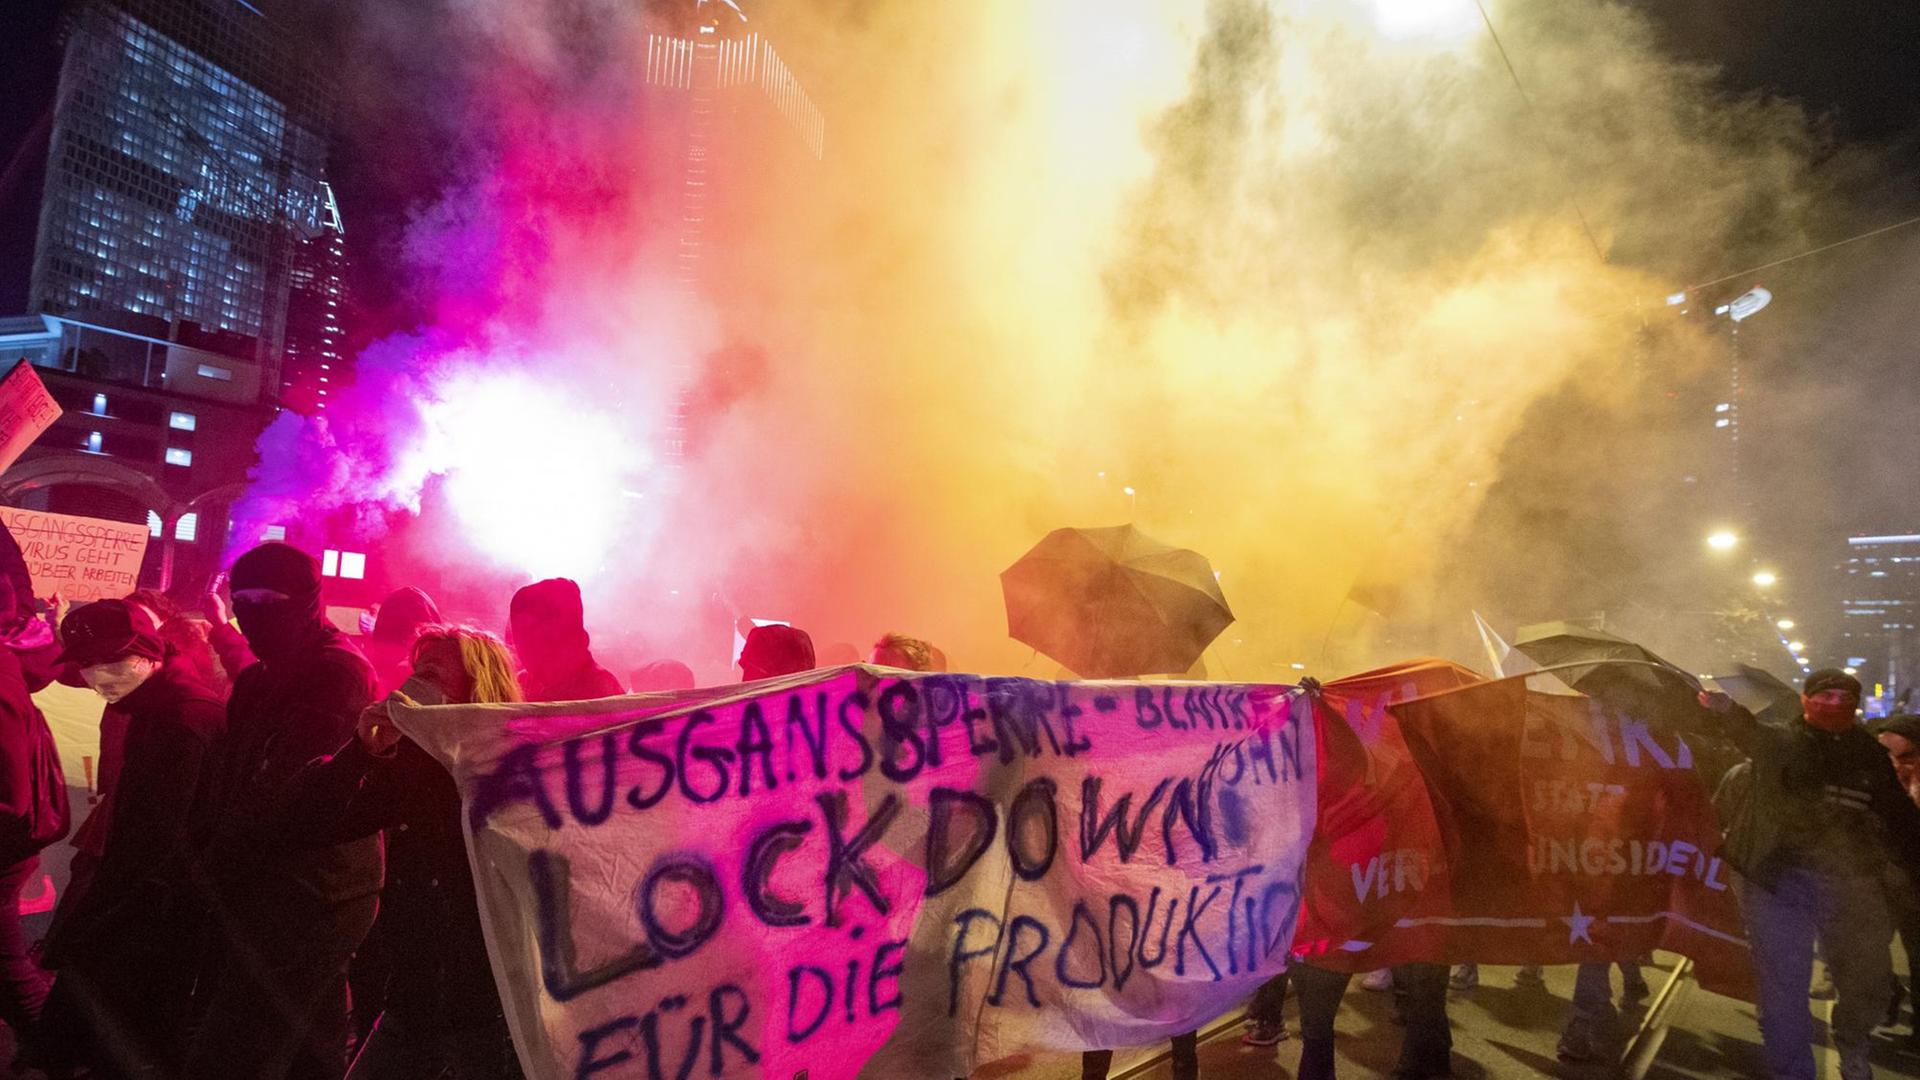 Demonstranten in Frankfurt am Main nehmen an einer Kundgebung gegen die Ausgangsbeschränkungen teil und entzünden dabei Pyrotechnik.